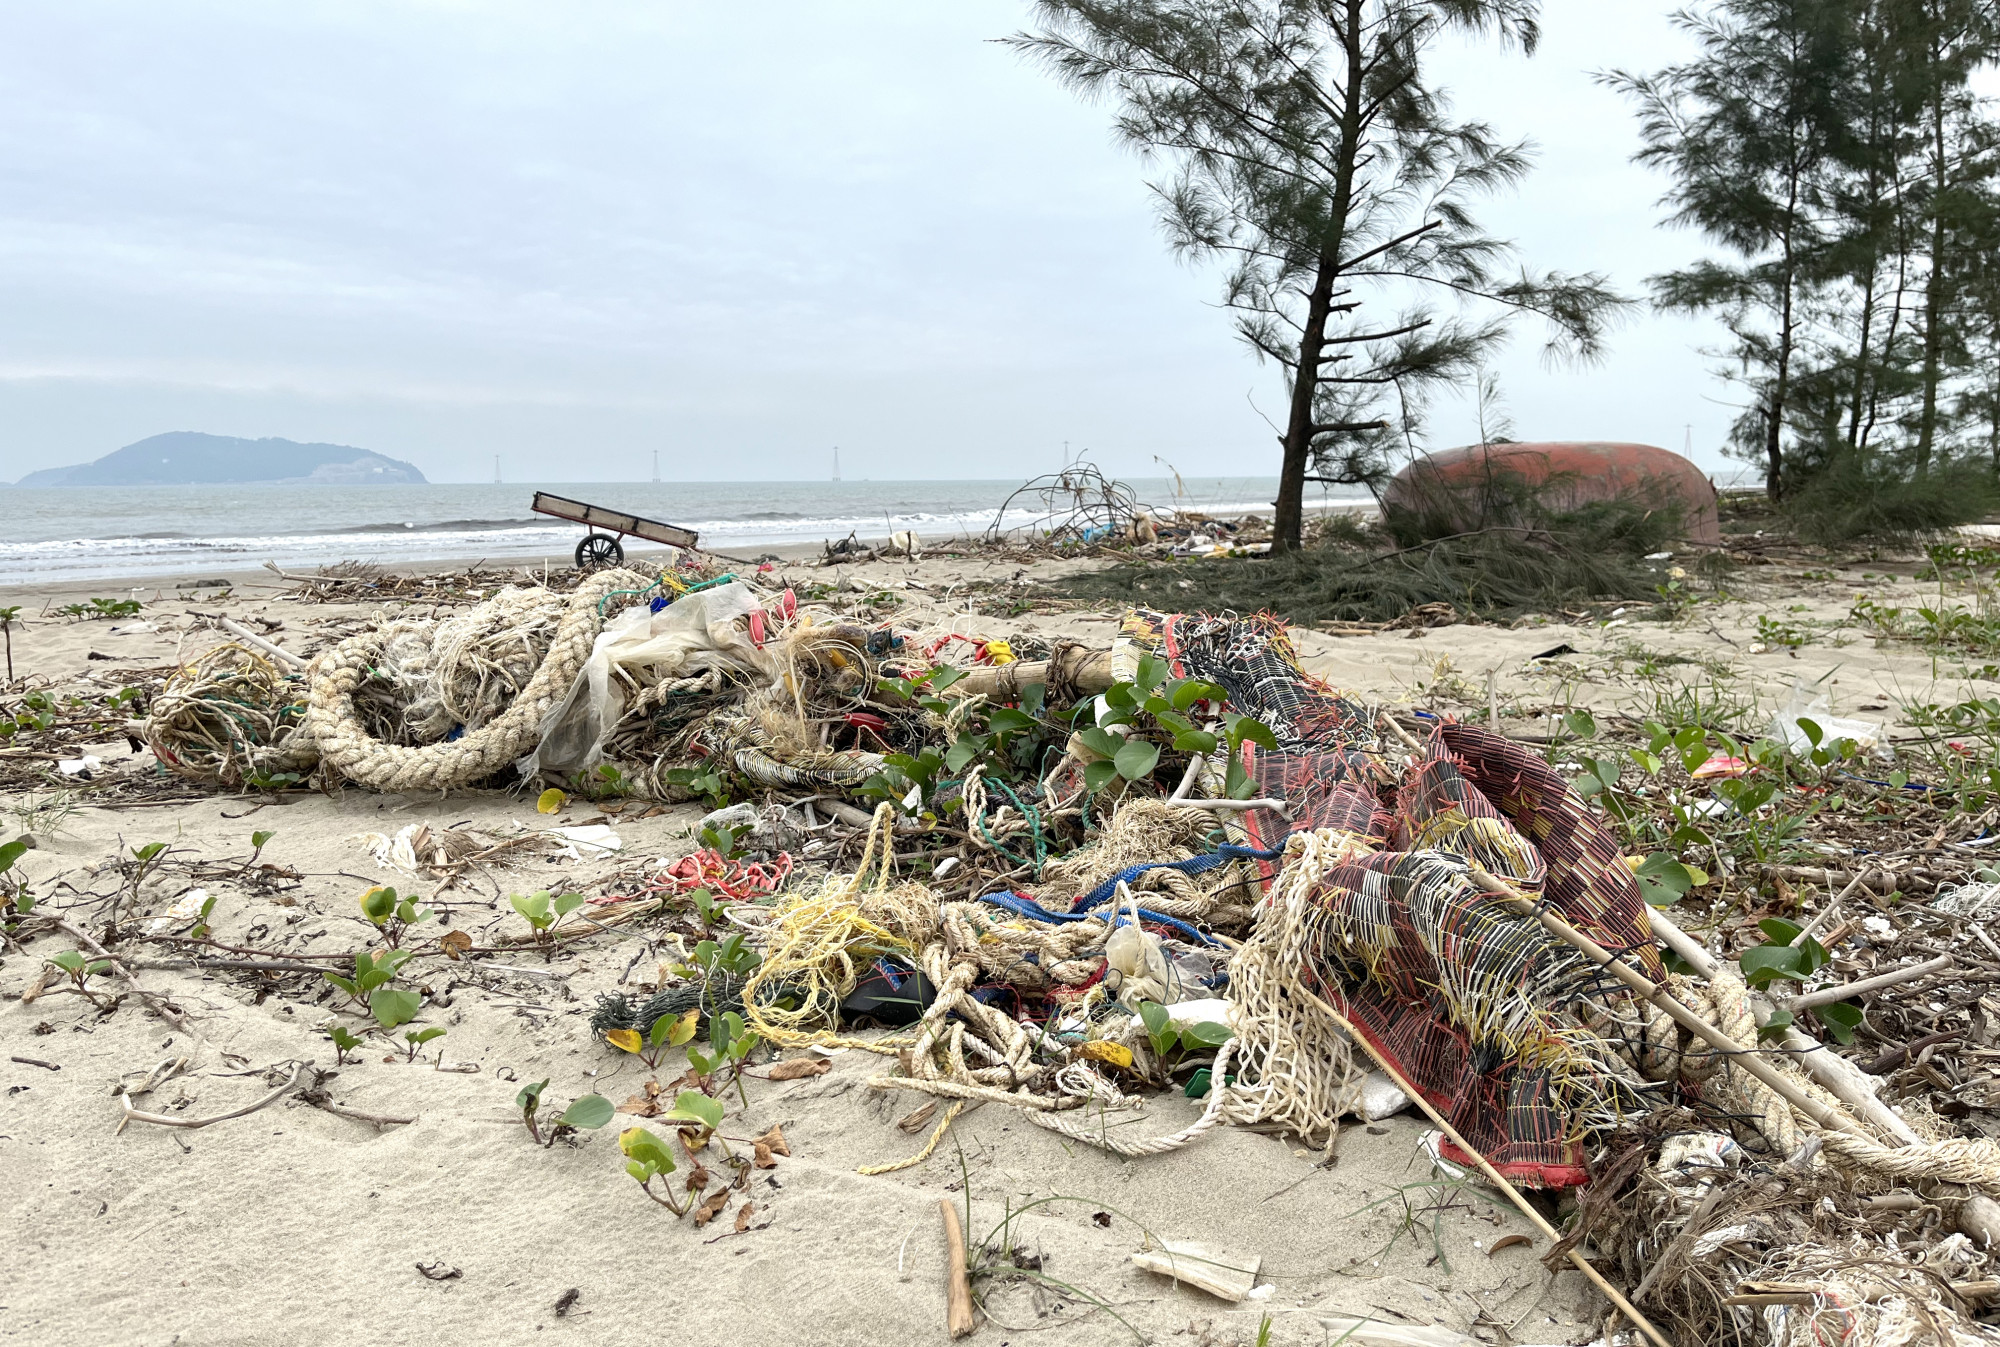 Phần diện tích được quy hoạch thành khu vui chơi bãi biển ngập ngụa trong rác thải - Ảnh: Phan Ngọc